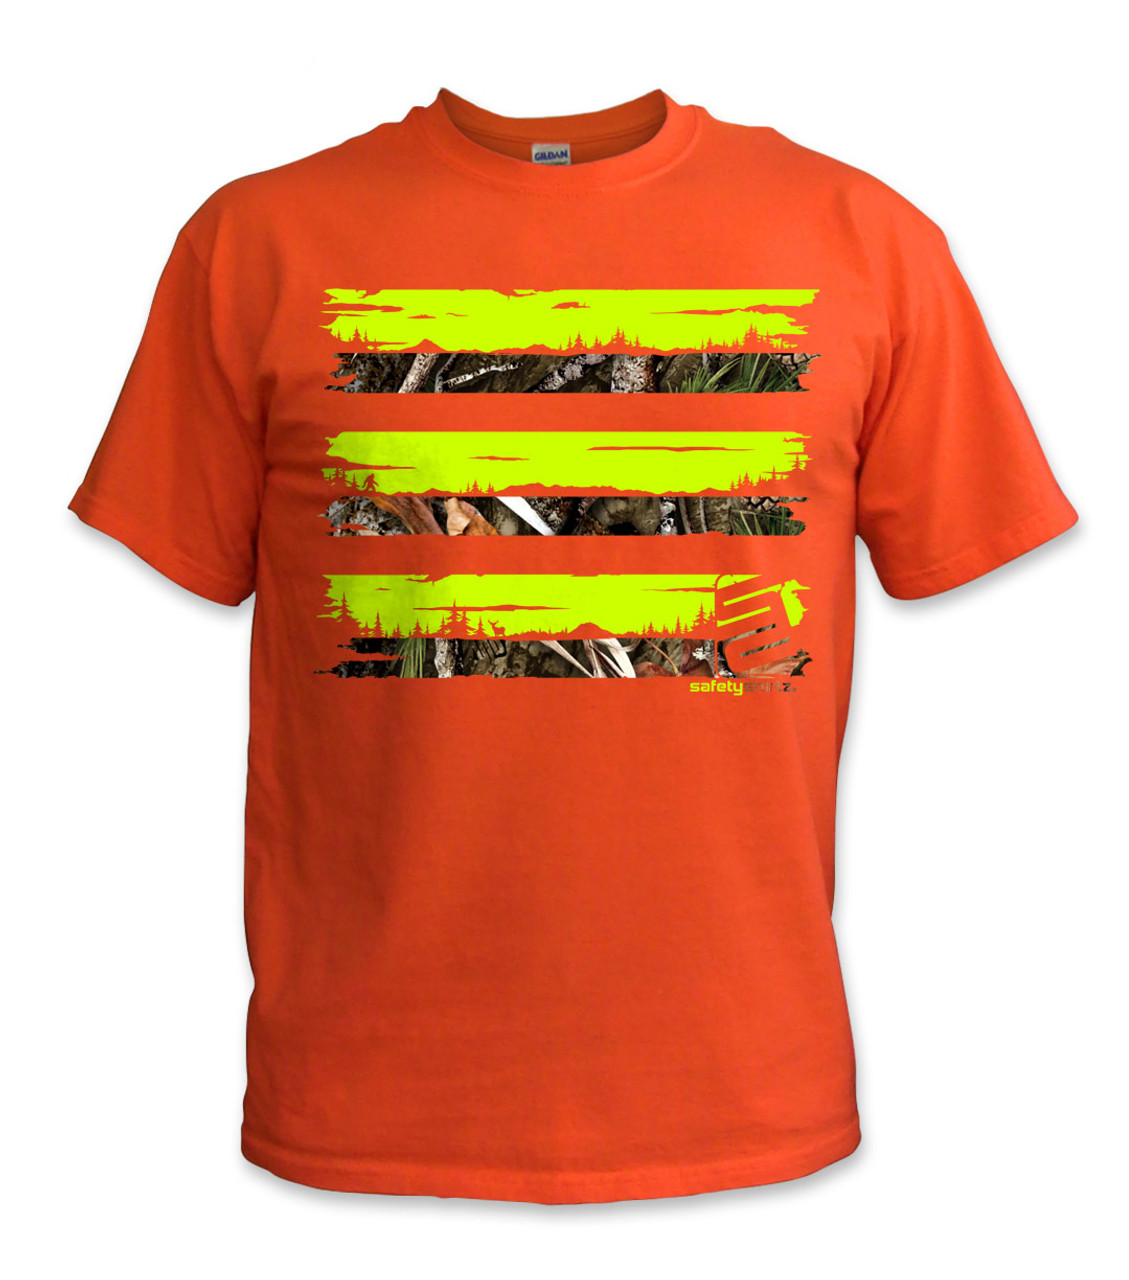 PNW Camo Safety Shirt - Yellow-Camo-Orange - Safetyshirtz